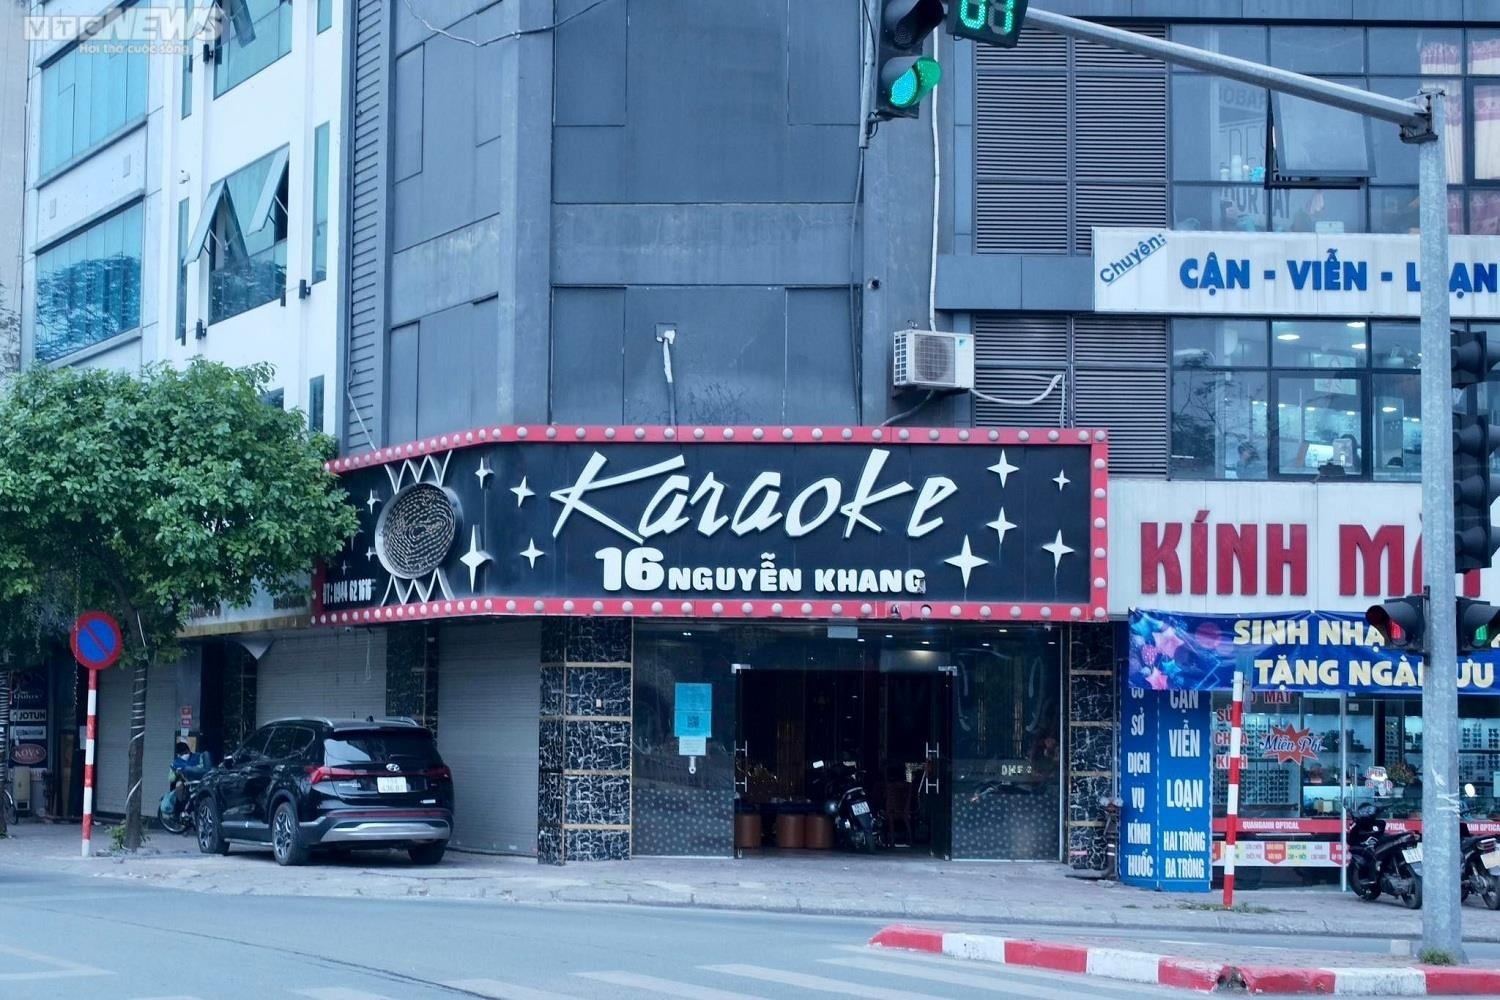 Chủ quán karaoke Hà Nội tán gia bại sản, bán bia mưu sinh - Ảnh 1.